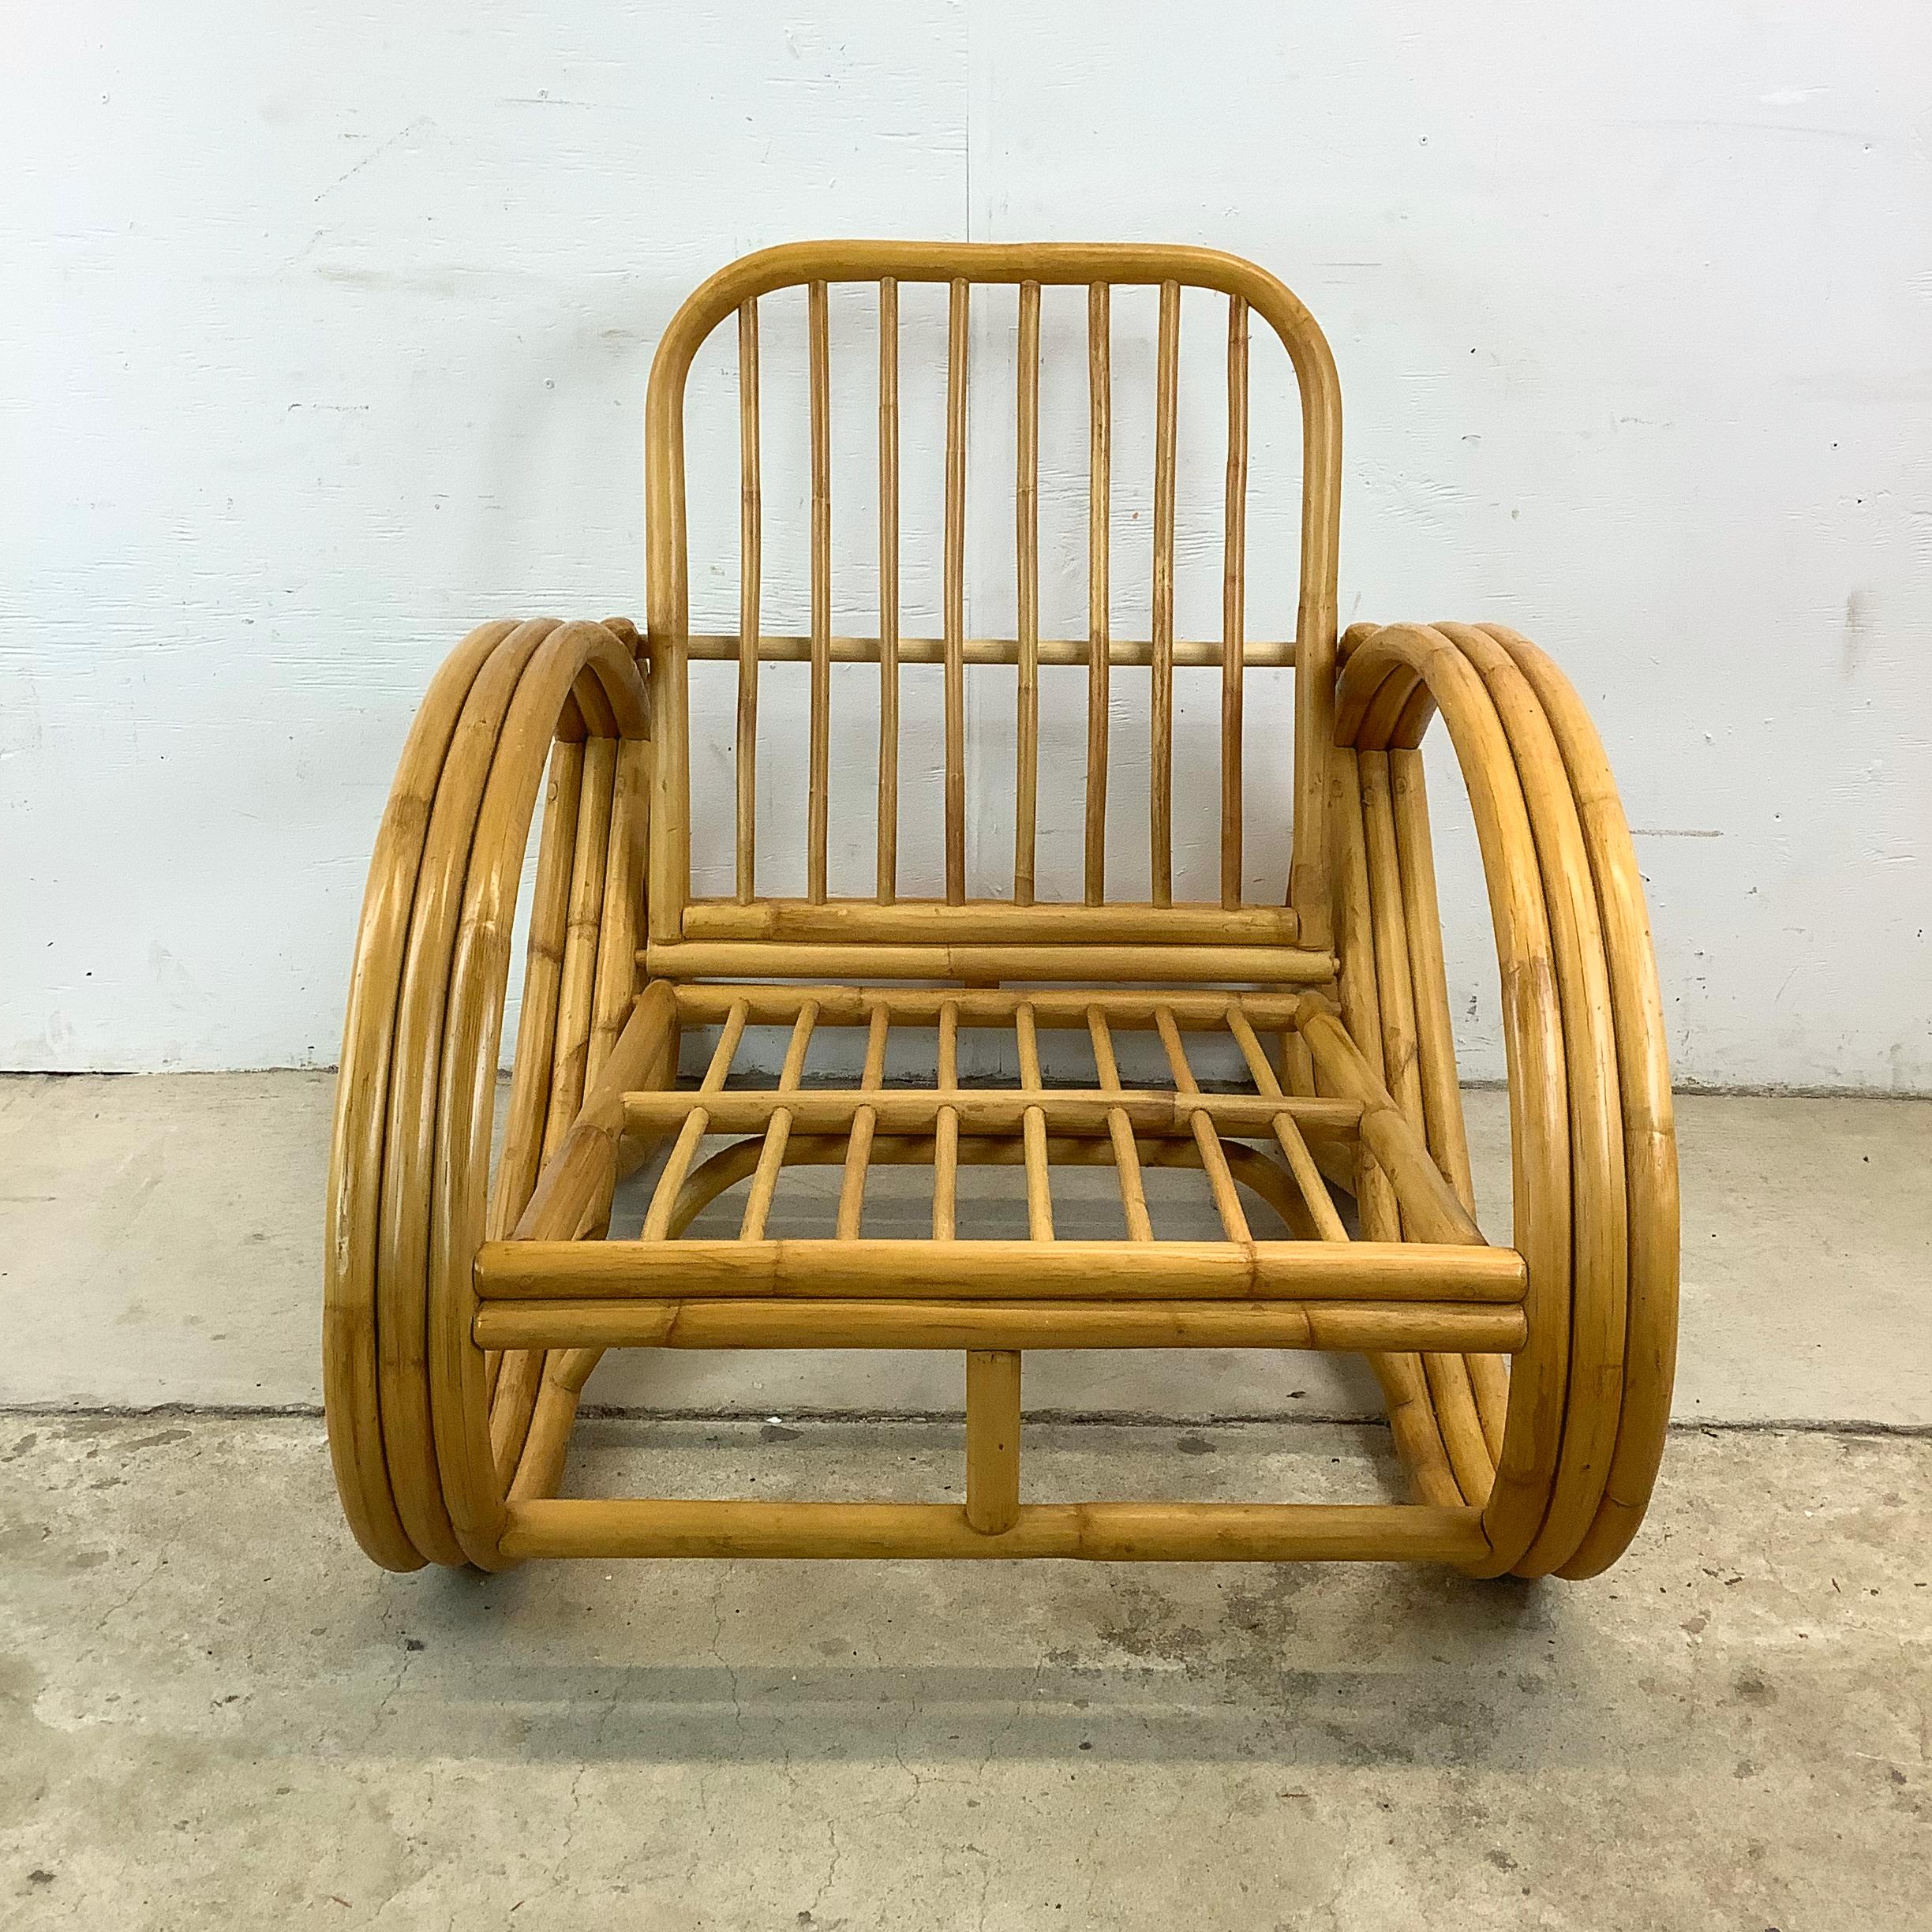 Voici cette chaise longue vintage en rotin et bambou - une charmante fusion de confort, de style et de durabilité inspirée par le design emblématique de Paul Frankl. Fabriquée en bambou naturel, cette chaise longue incarne la chaleur et l'élégance